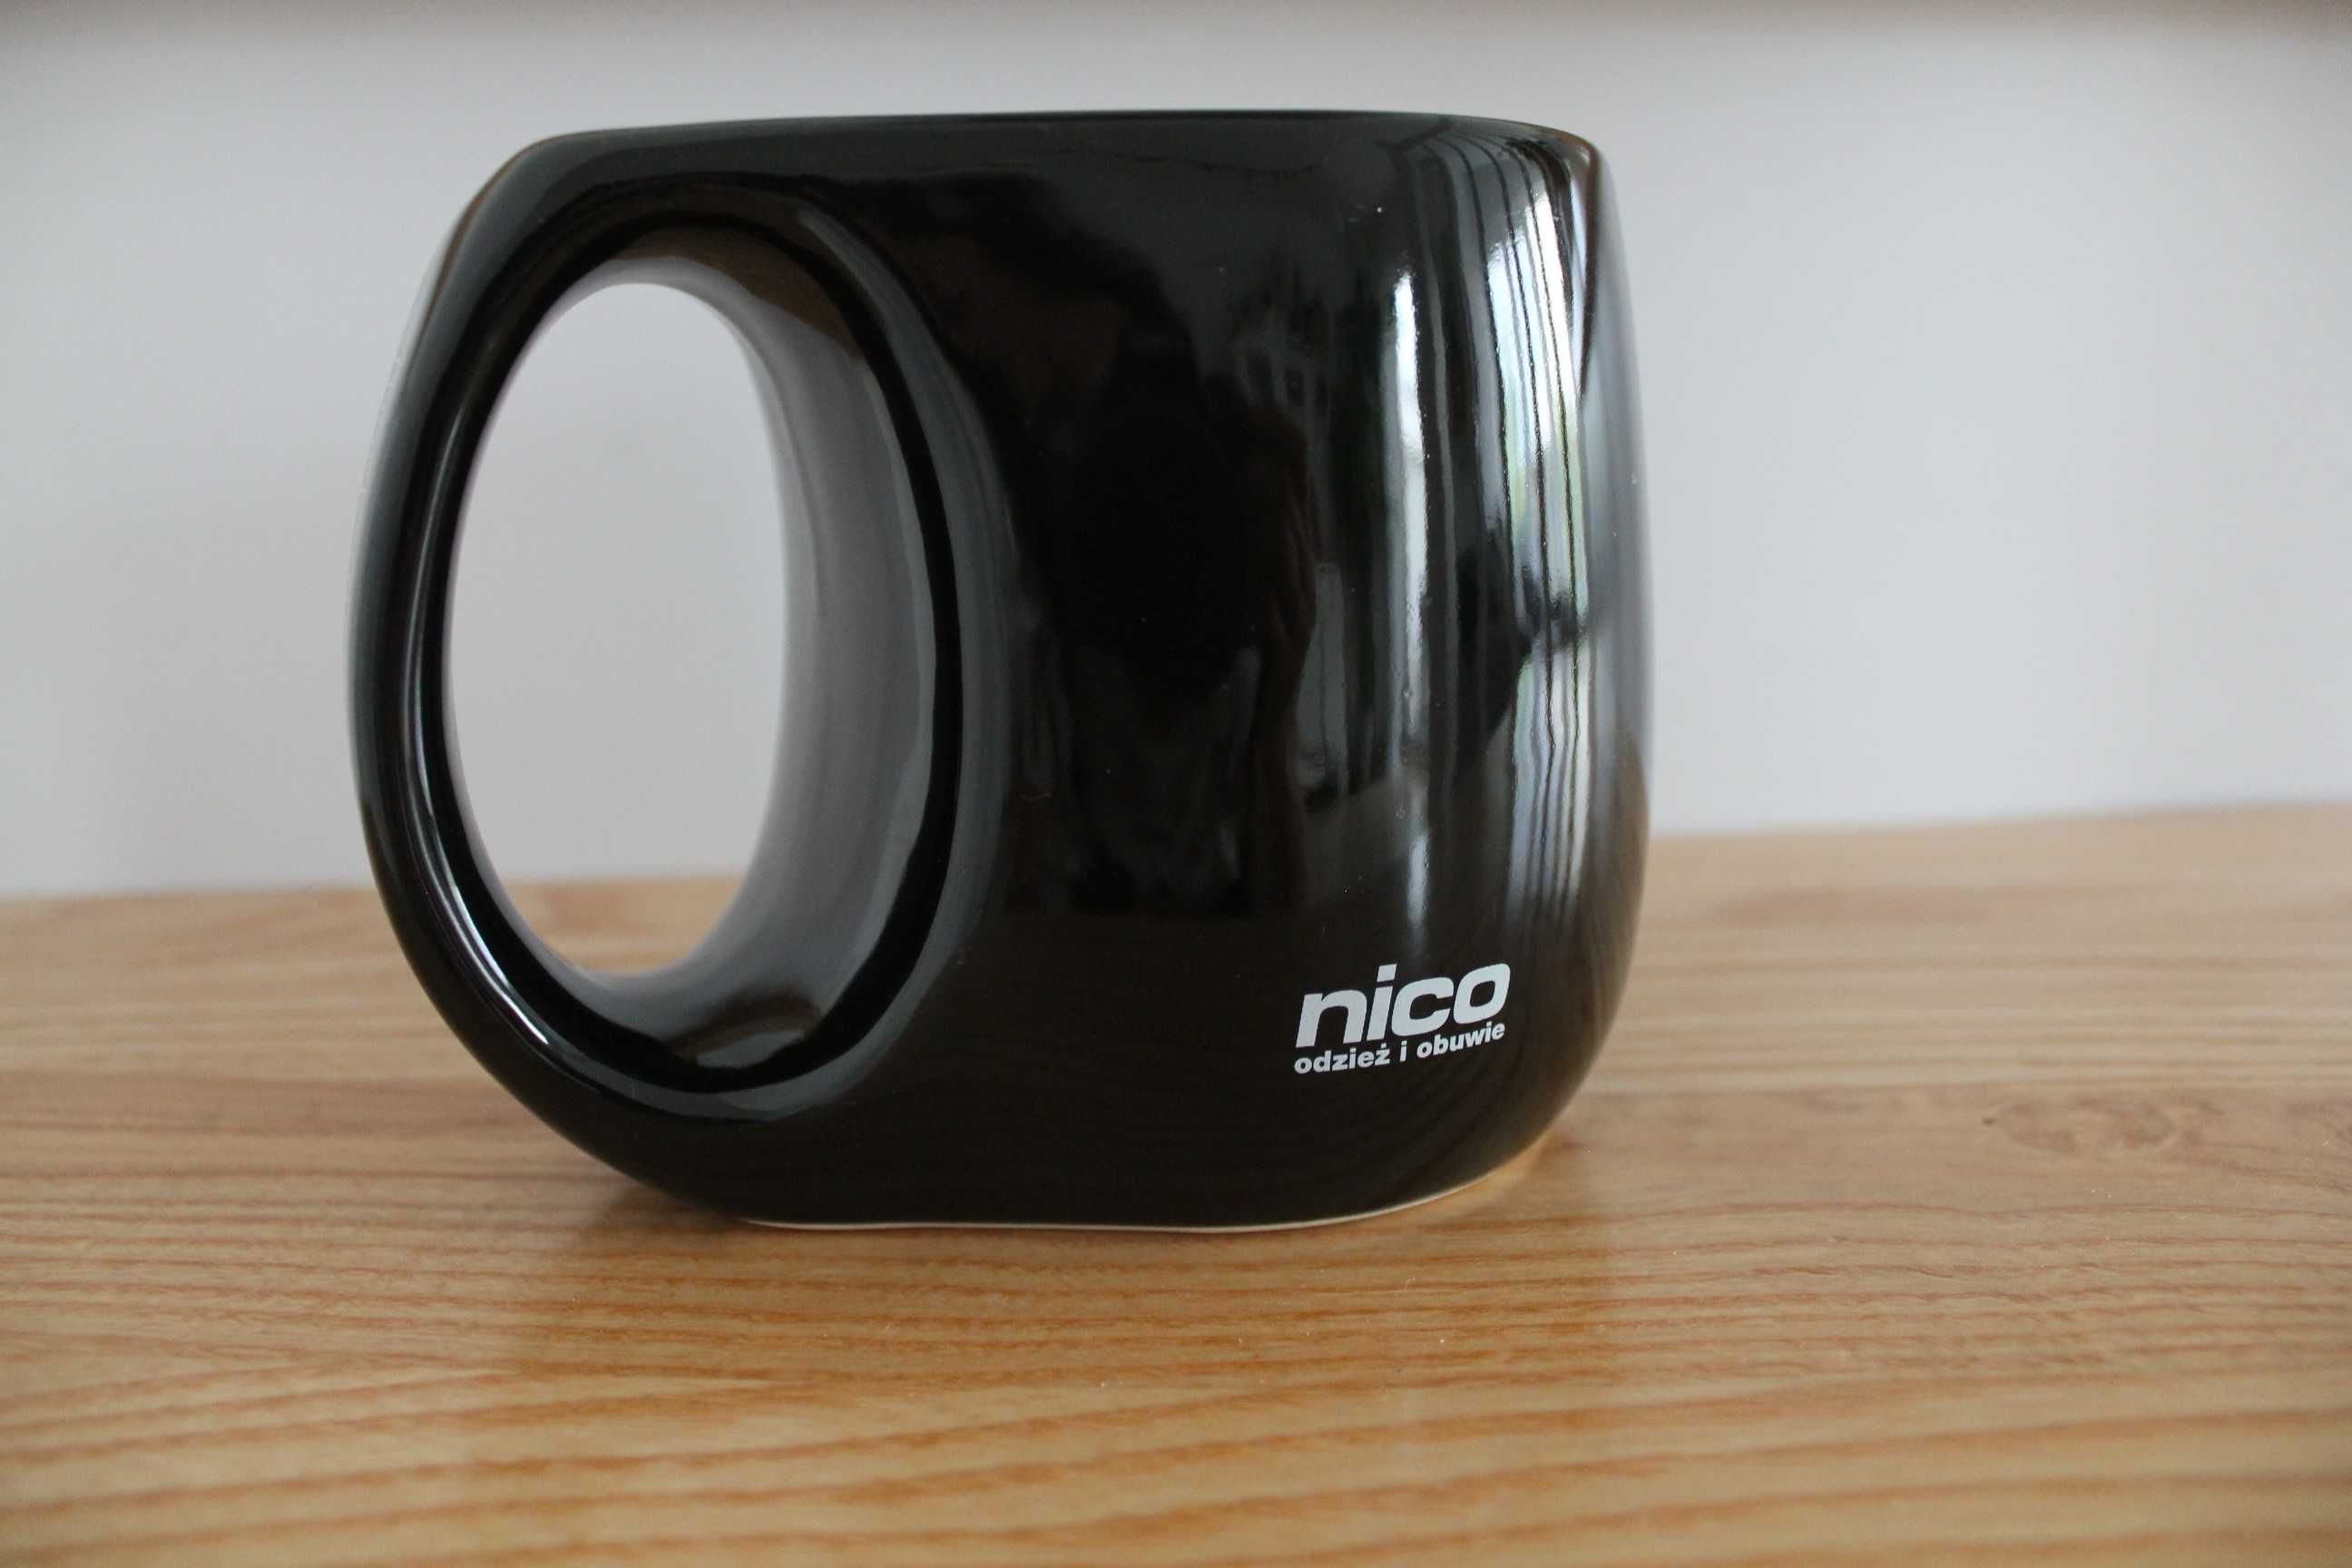 Duży pojemny czarny kubek Nico 600 ml, czarny pojemnik, wazon